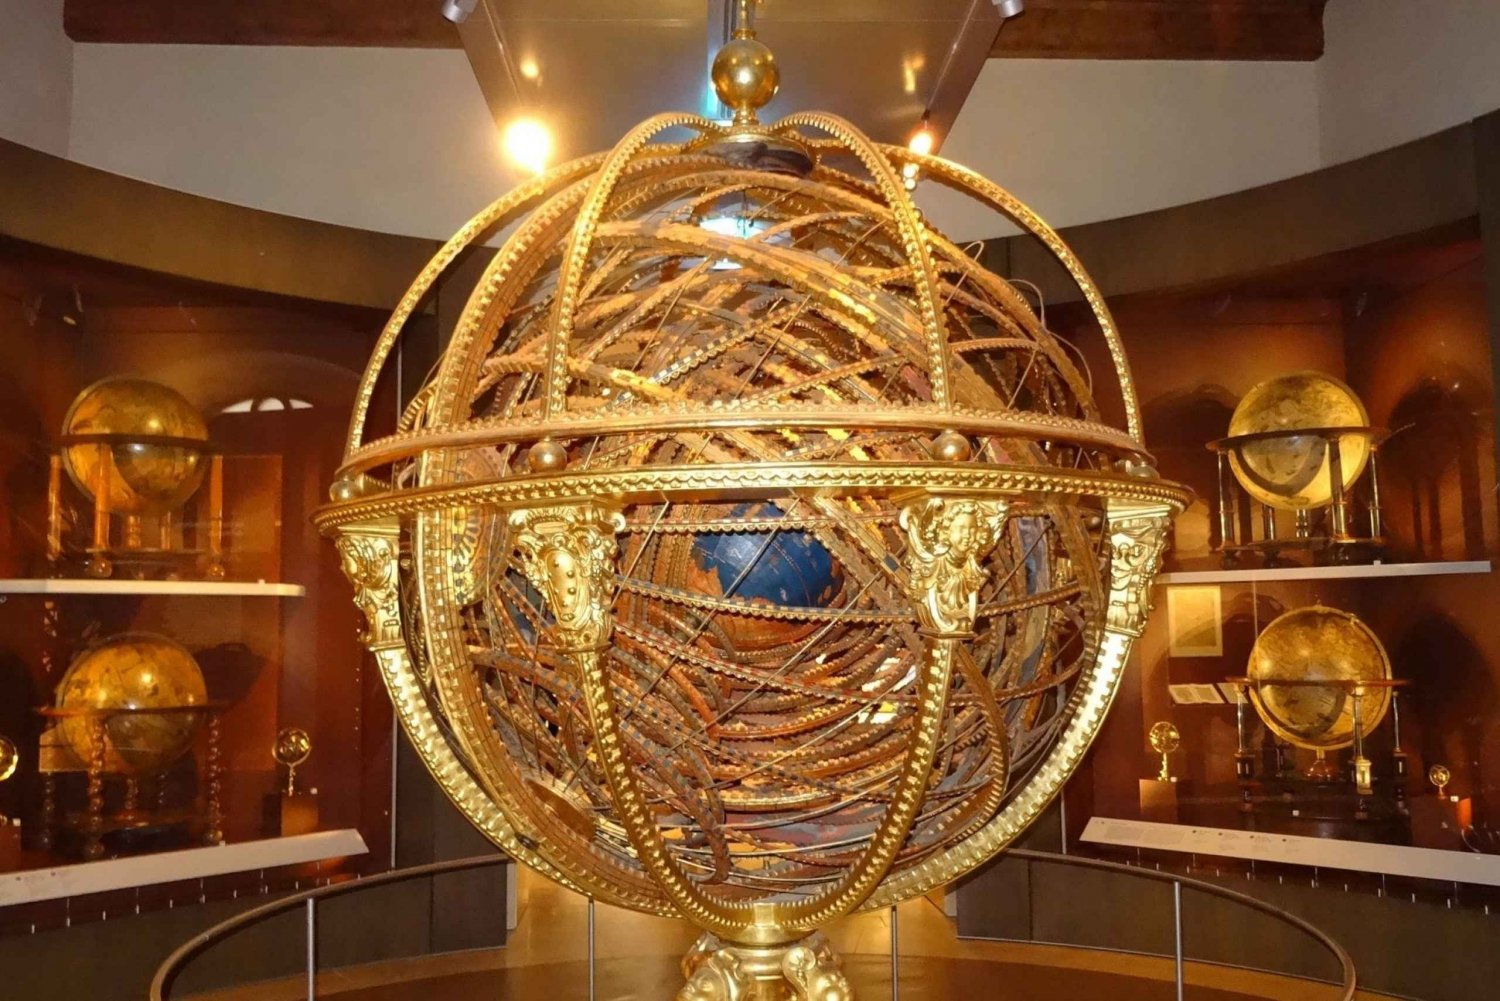 Florenz: Private astronomische Führung durch das Museo Galileo